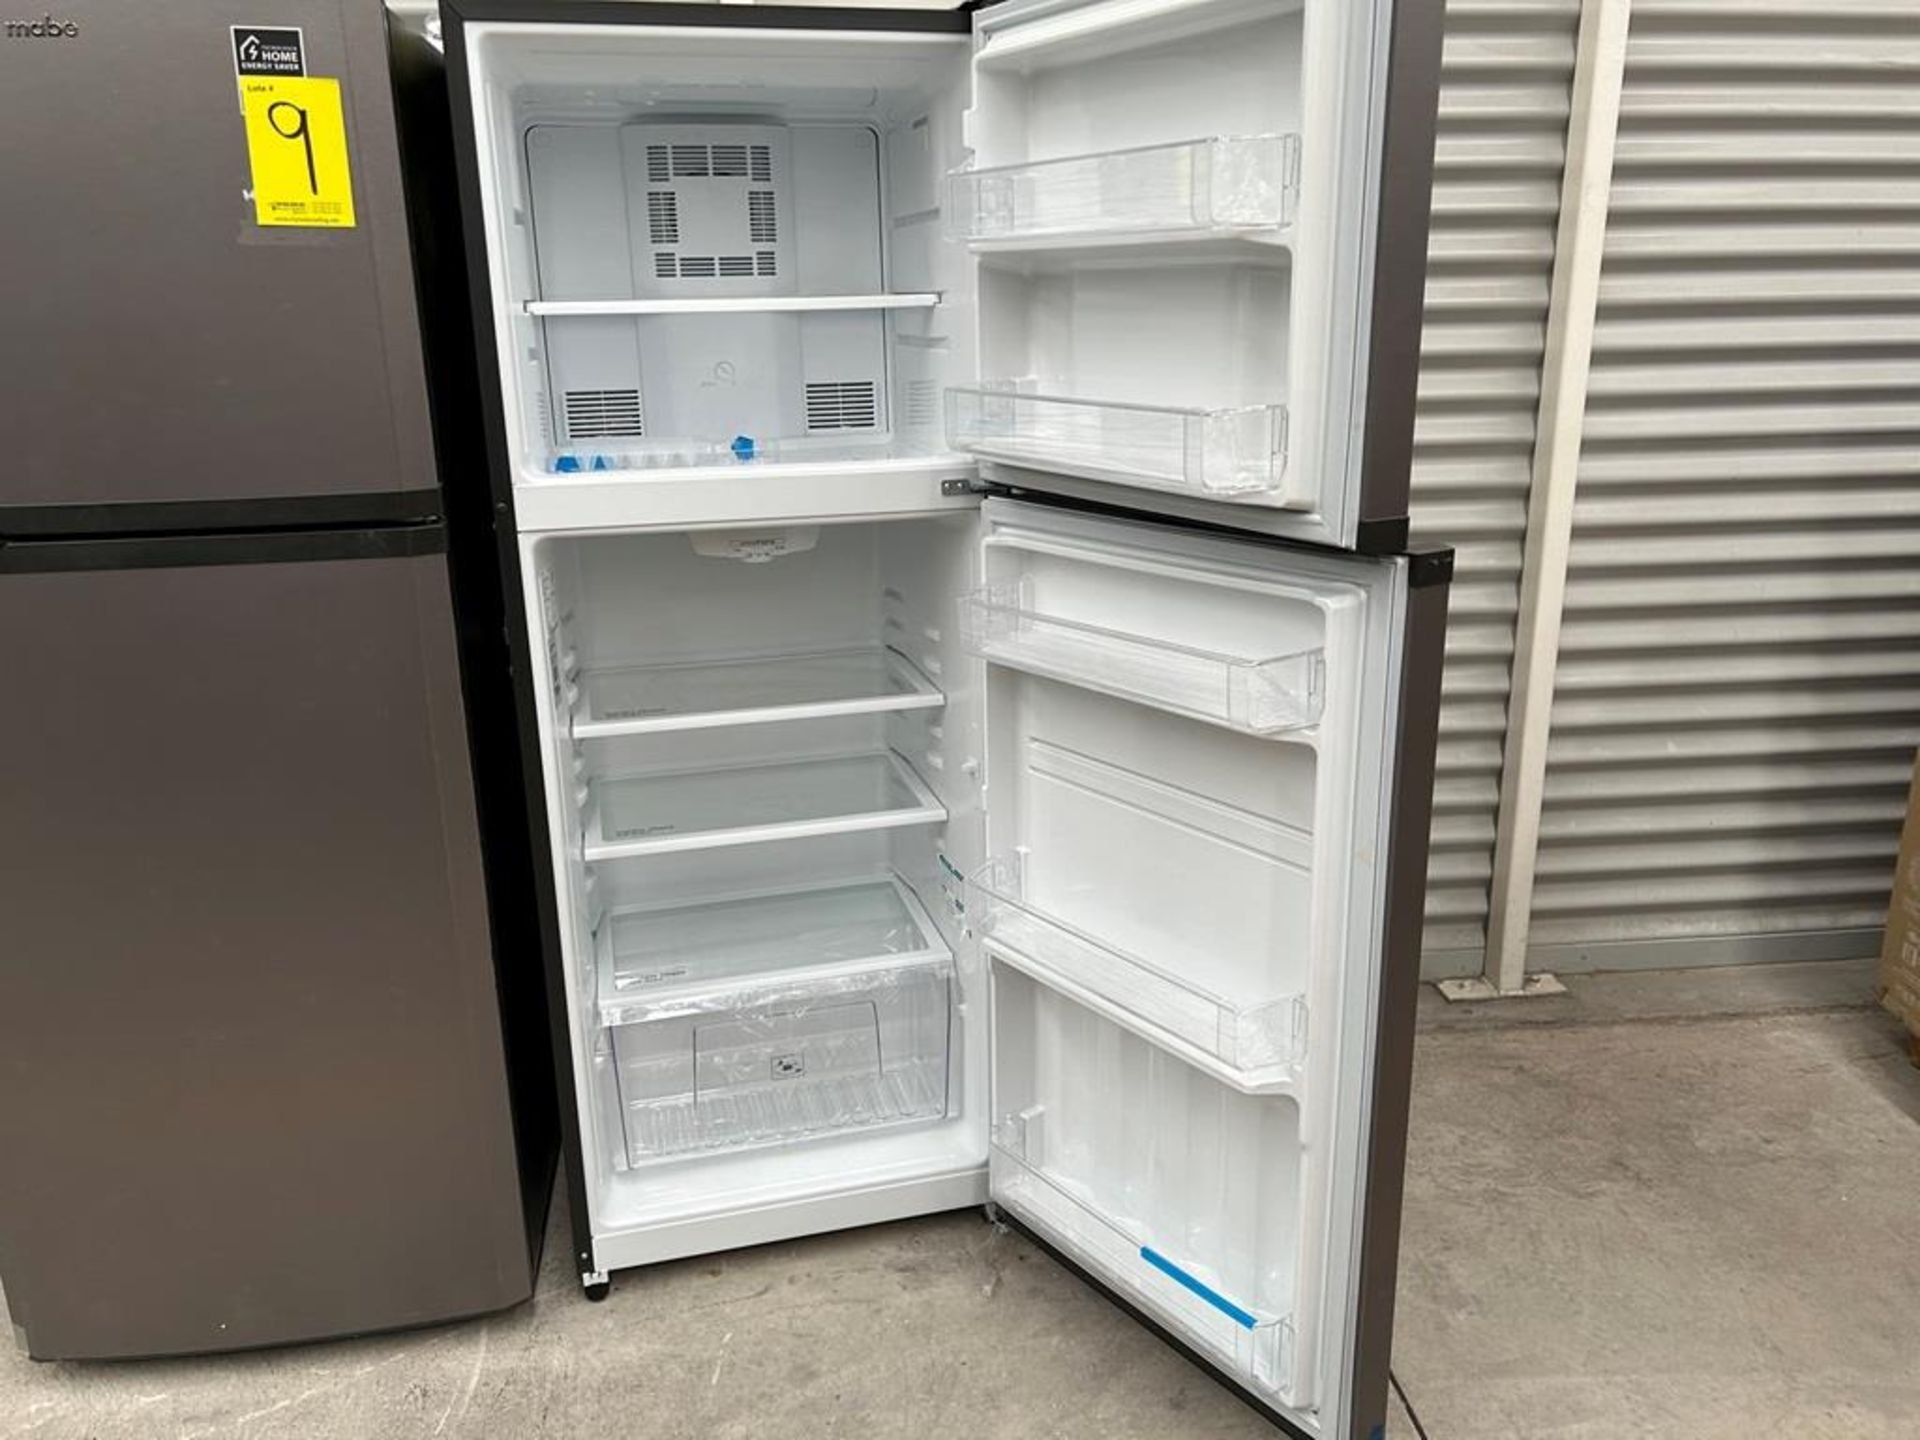 Lote de 2 refrigeradores contiene: 1 Refrigerador Marca MABE, Modelo RME360PVMRM0, Serie 01177, Col - Image 11 of 18